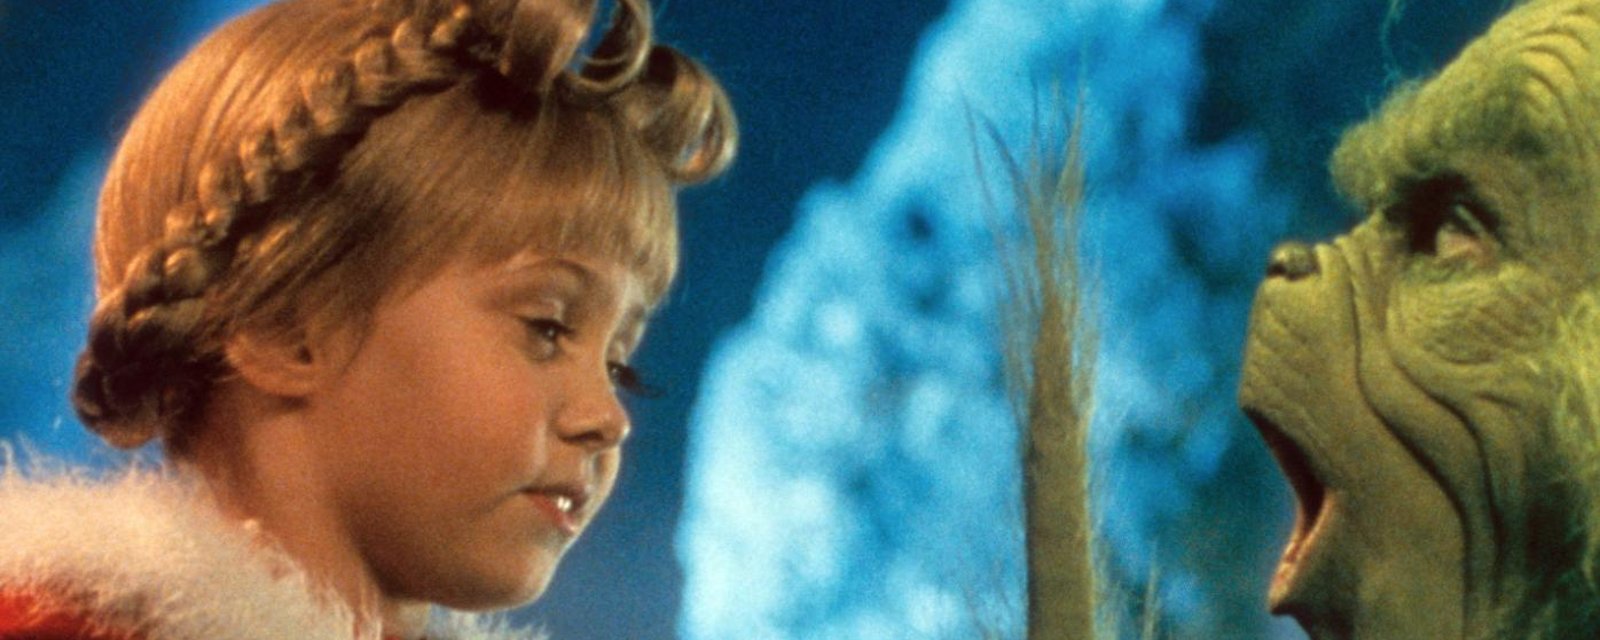 16 ans plus tard, la petite fille du film Le Grincheux est devenue une femme à couper le souffle!